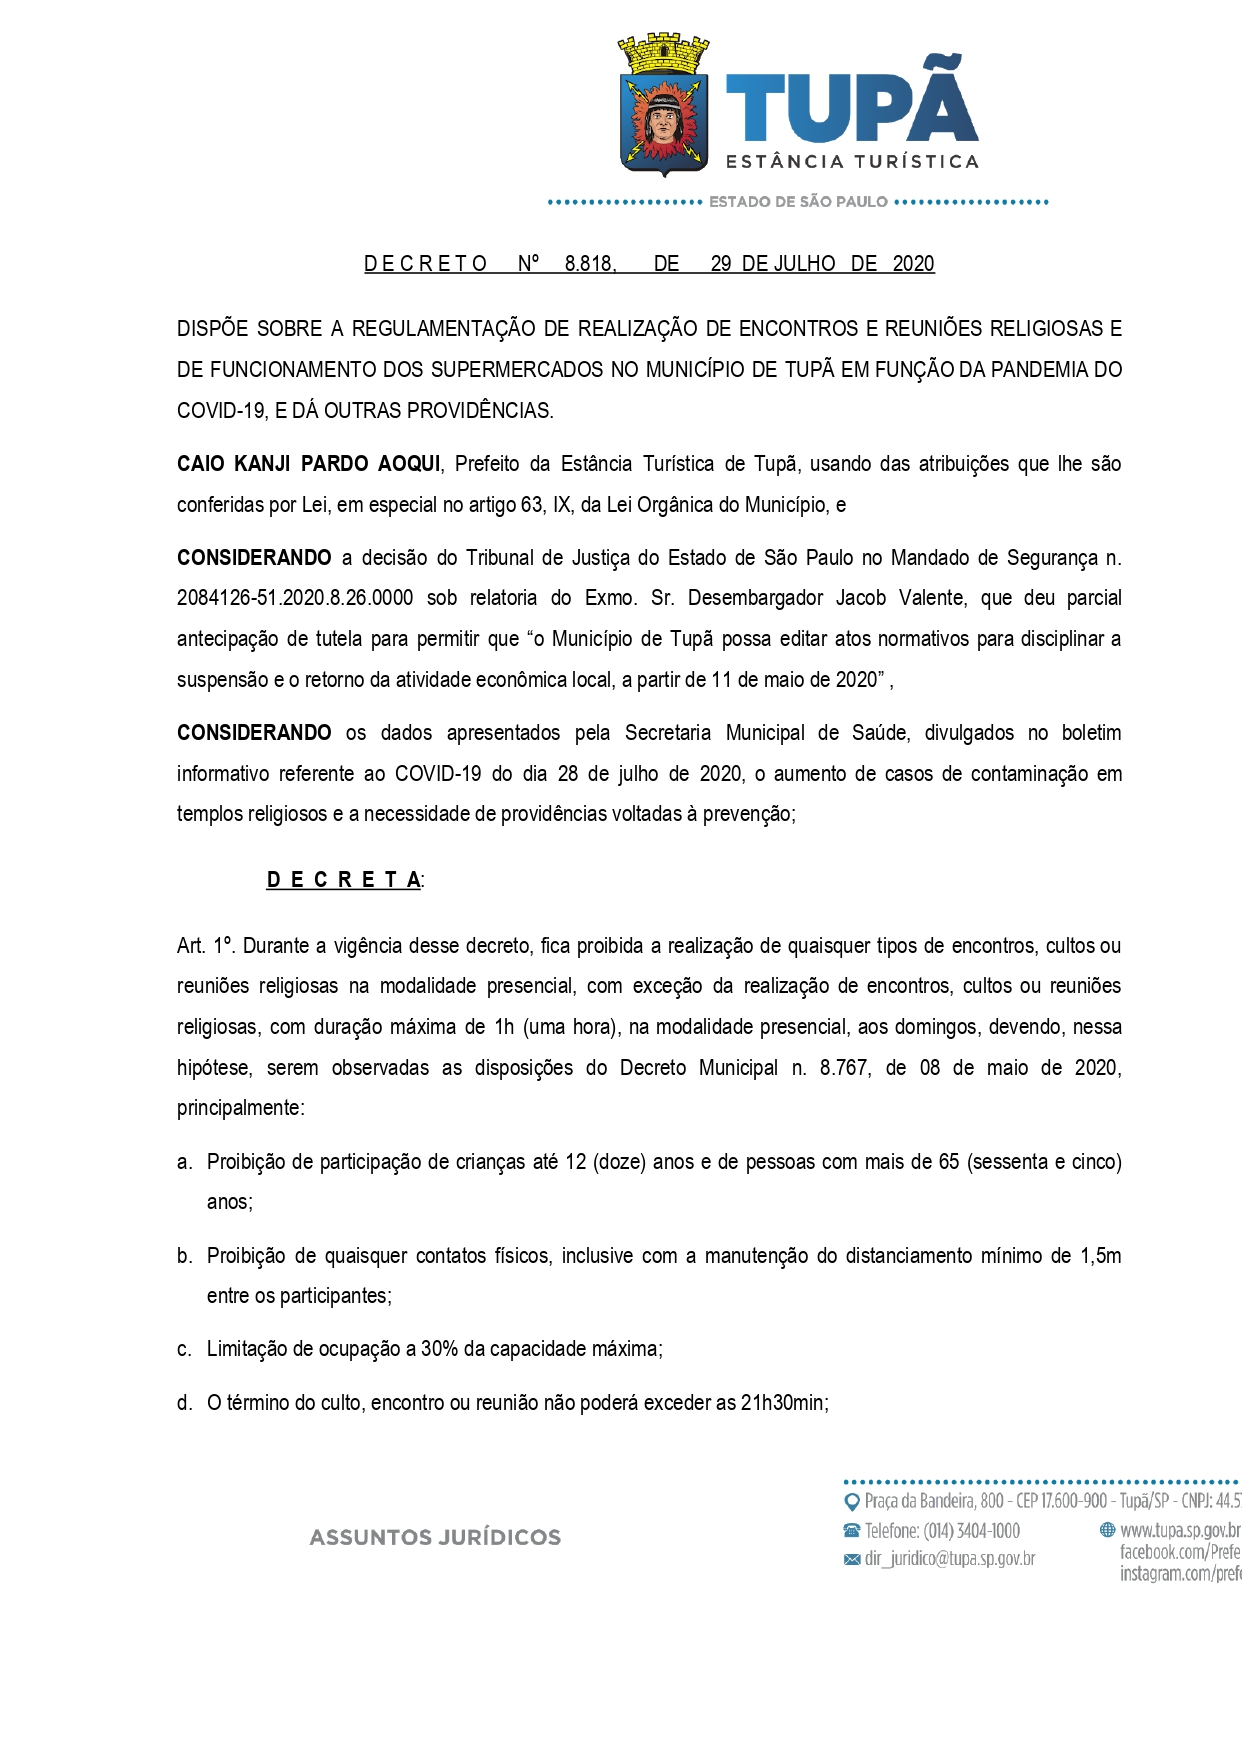 Novo decreto da Prefeitura de Tupã permitirá cultos religiosos apenas aos domingos